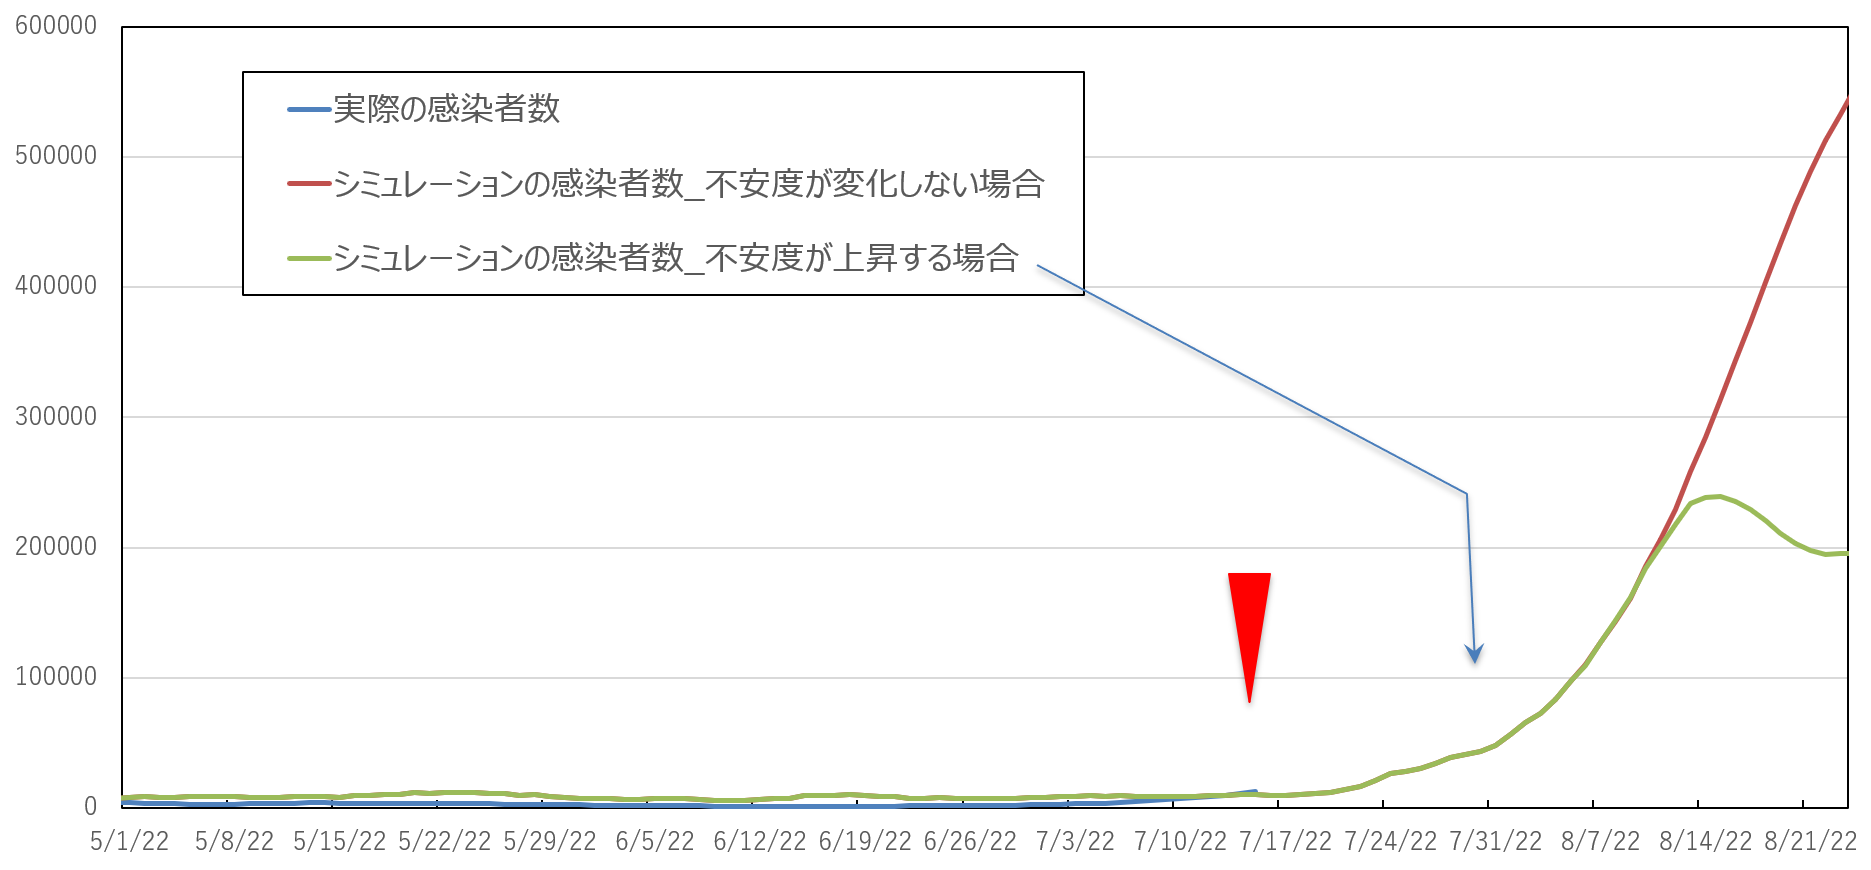 東京の感染者数の不安度のグラフ